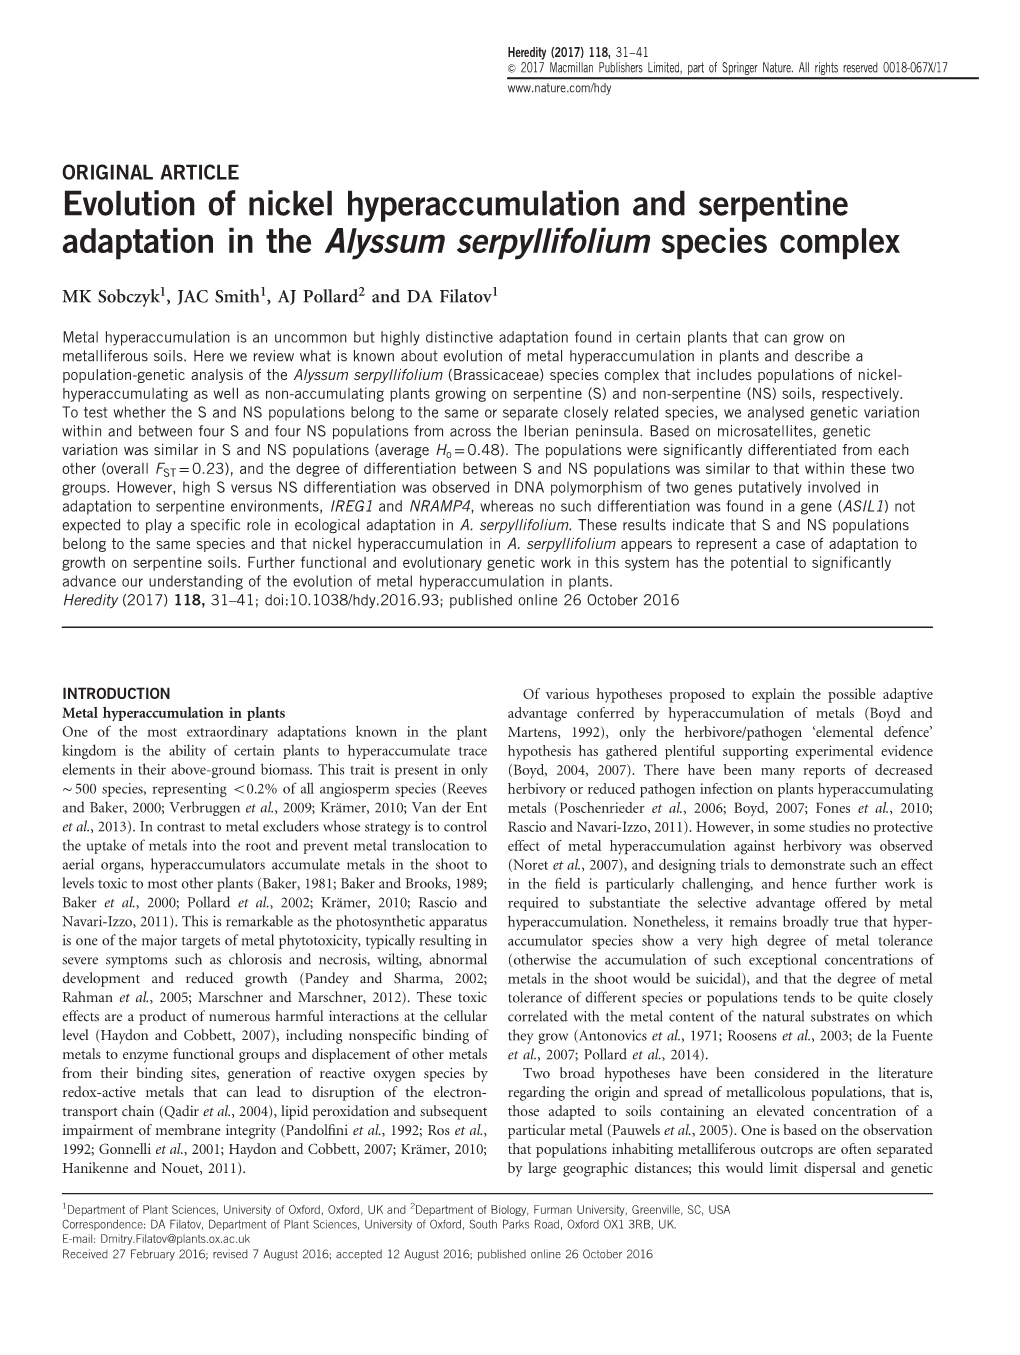 Evolution of Nickel Hyperaccumulation and Serpentine Adaptation in the Alyssum Serpyllifolium Species Complex